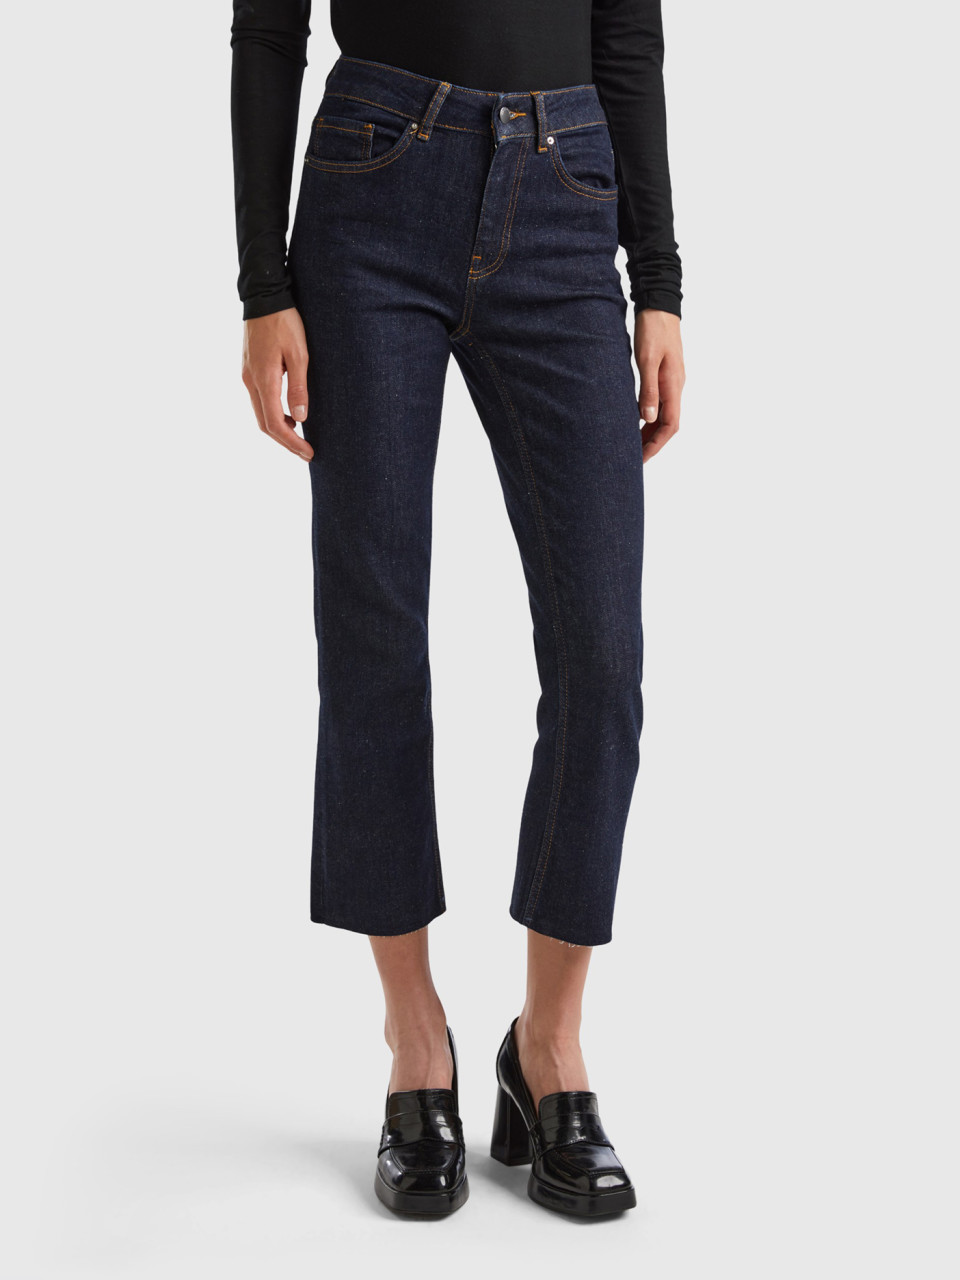 Benetton, Cropped Five-pocket Jeans, Dark Blue, Women